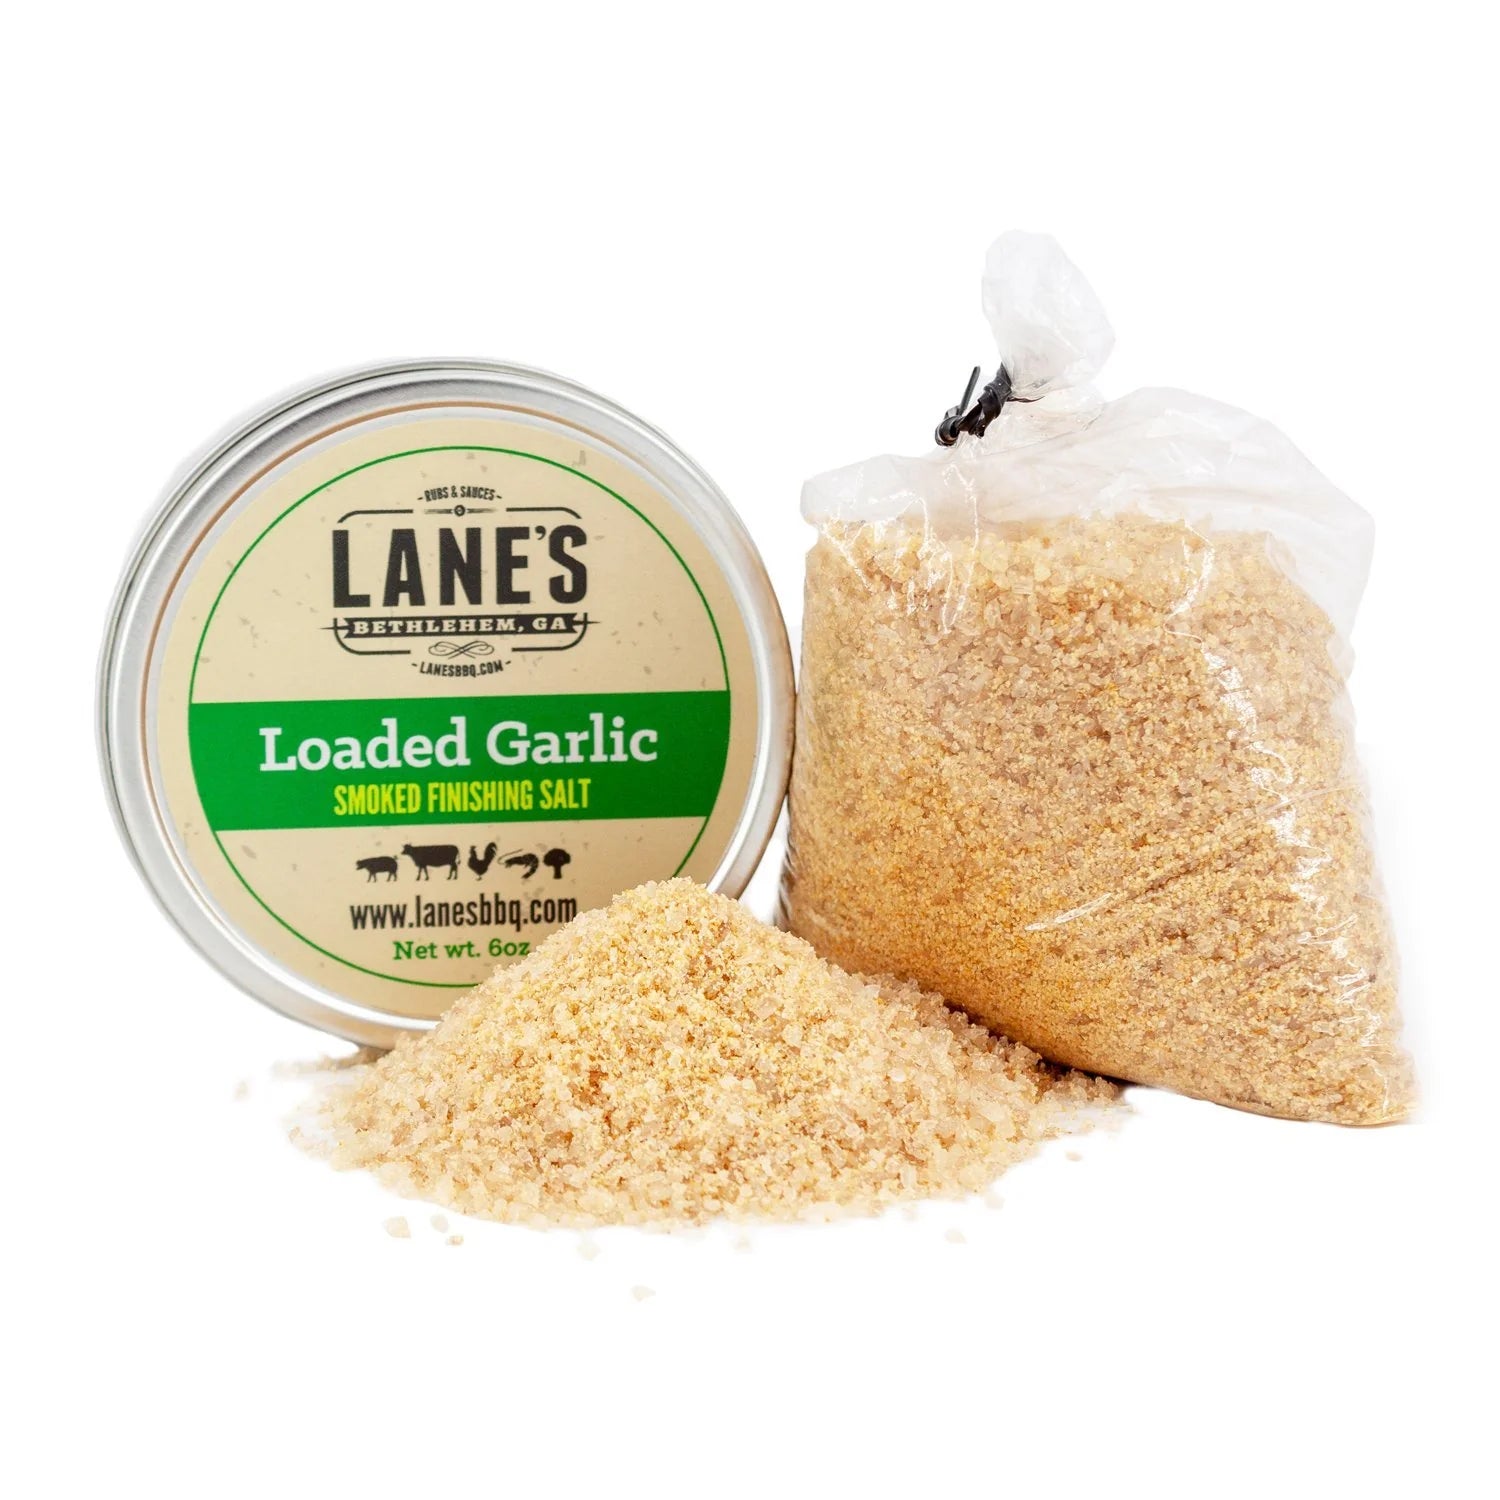 Lane's Loaded Garlic Smoked Finishing Salt